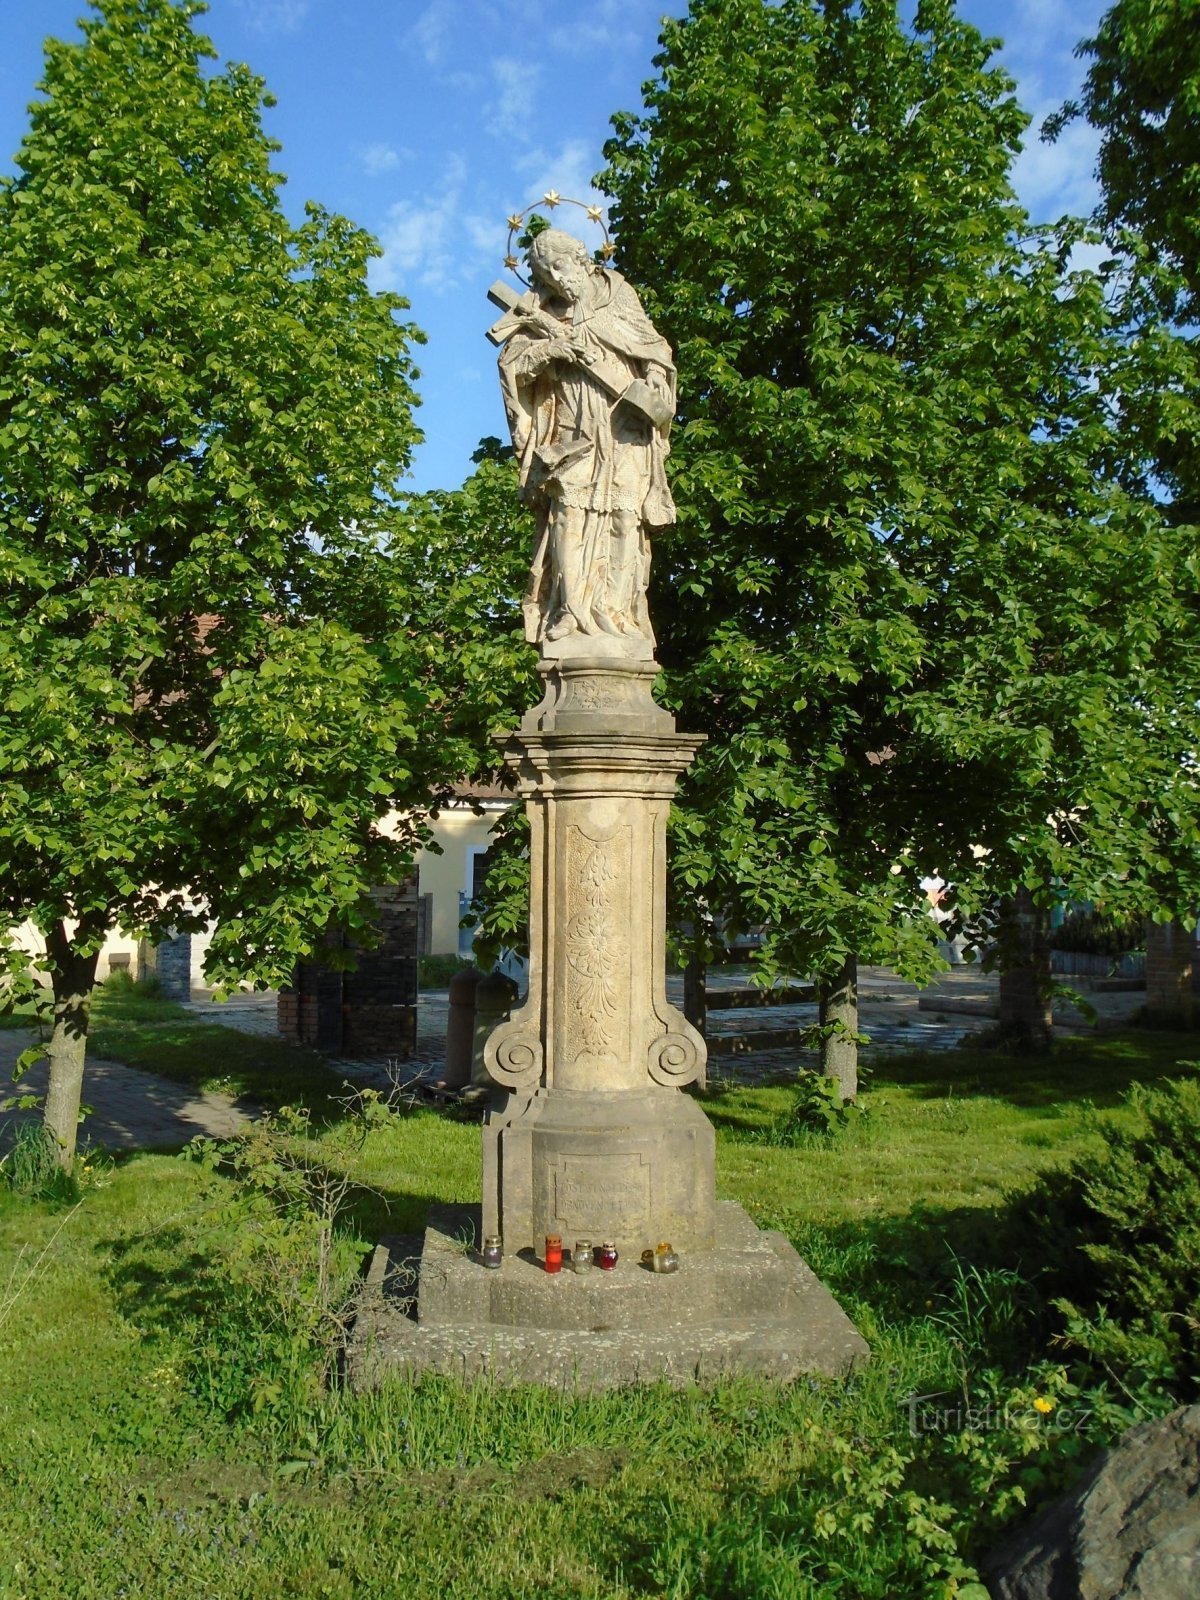 Статуя св. Иоанн Непомуцкий в Справчицах (Градец Кралове, 1.5.2018 мая XNUMX г.)